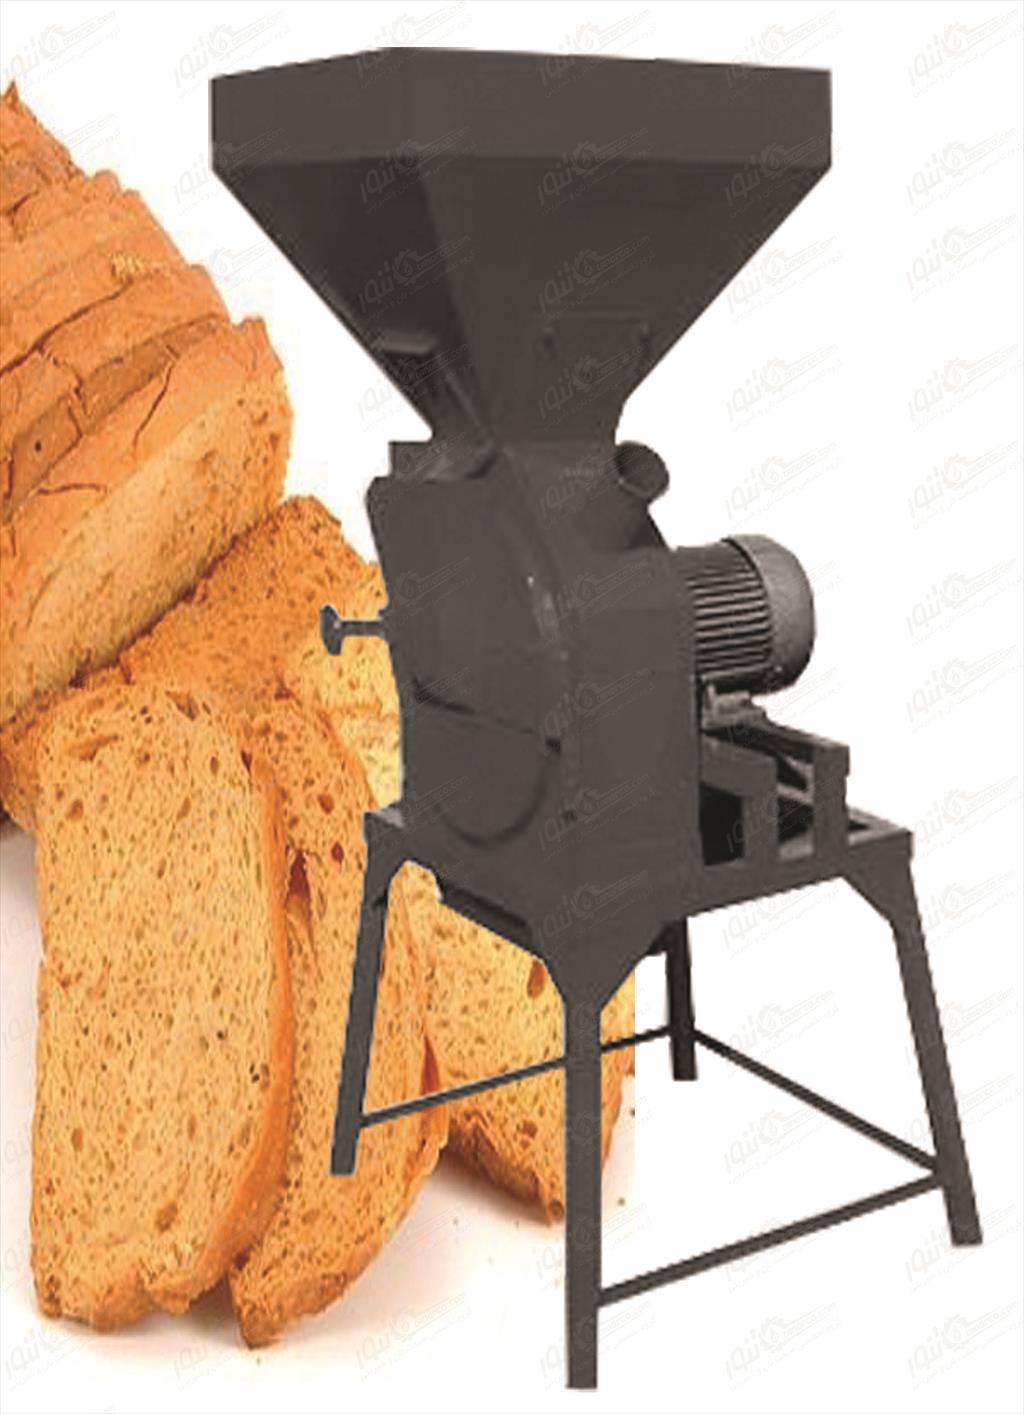 دستگاه آسیاب نان خشک<br/><br/>آﺳﯿﺎب ﻧﺎن دستگاهی برای خرد کردن نانهای خشک شده ،جهت استفاده از پودر نان ( آرد نان ) با مصارف خوراکی میباشداین آردها که با نام آر industry industrial-machinery industrial-machinery